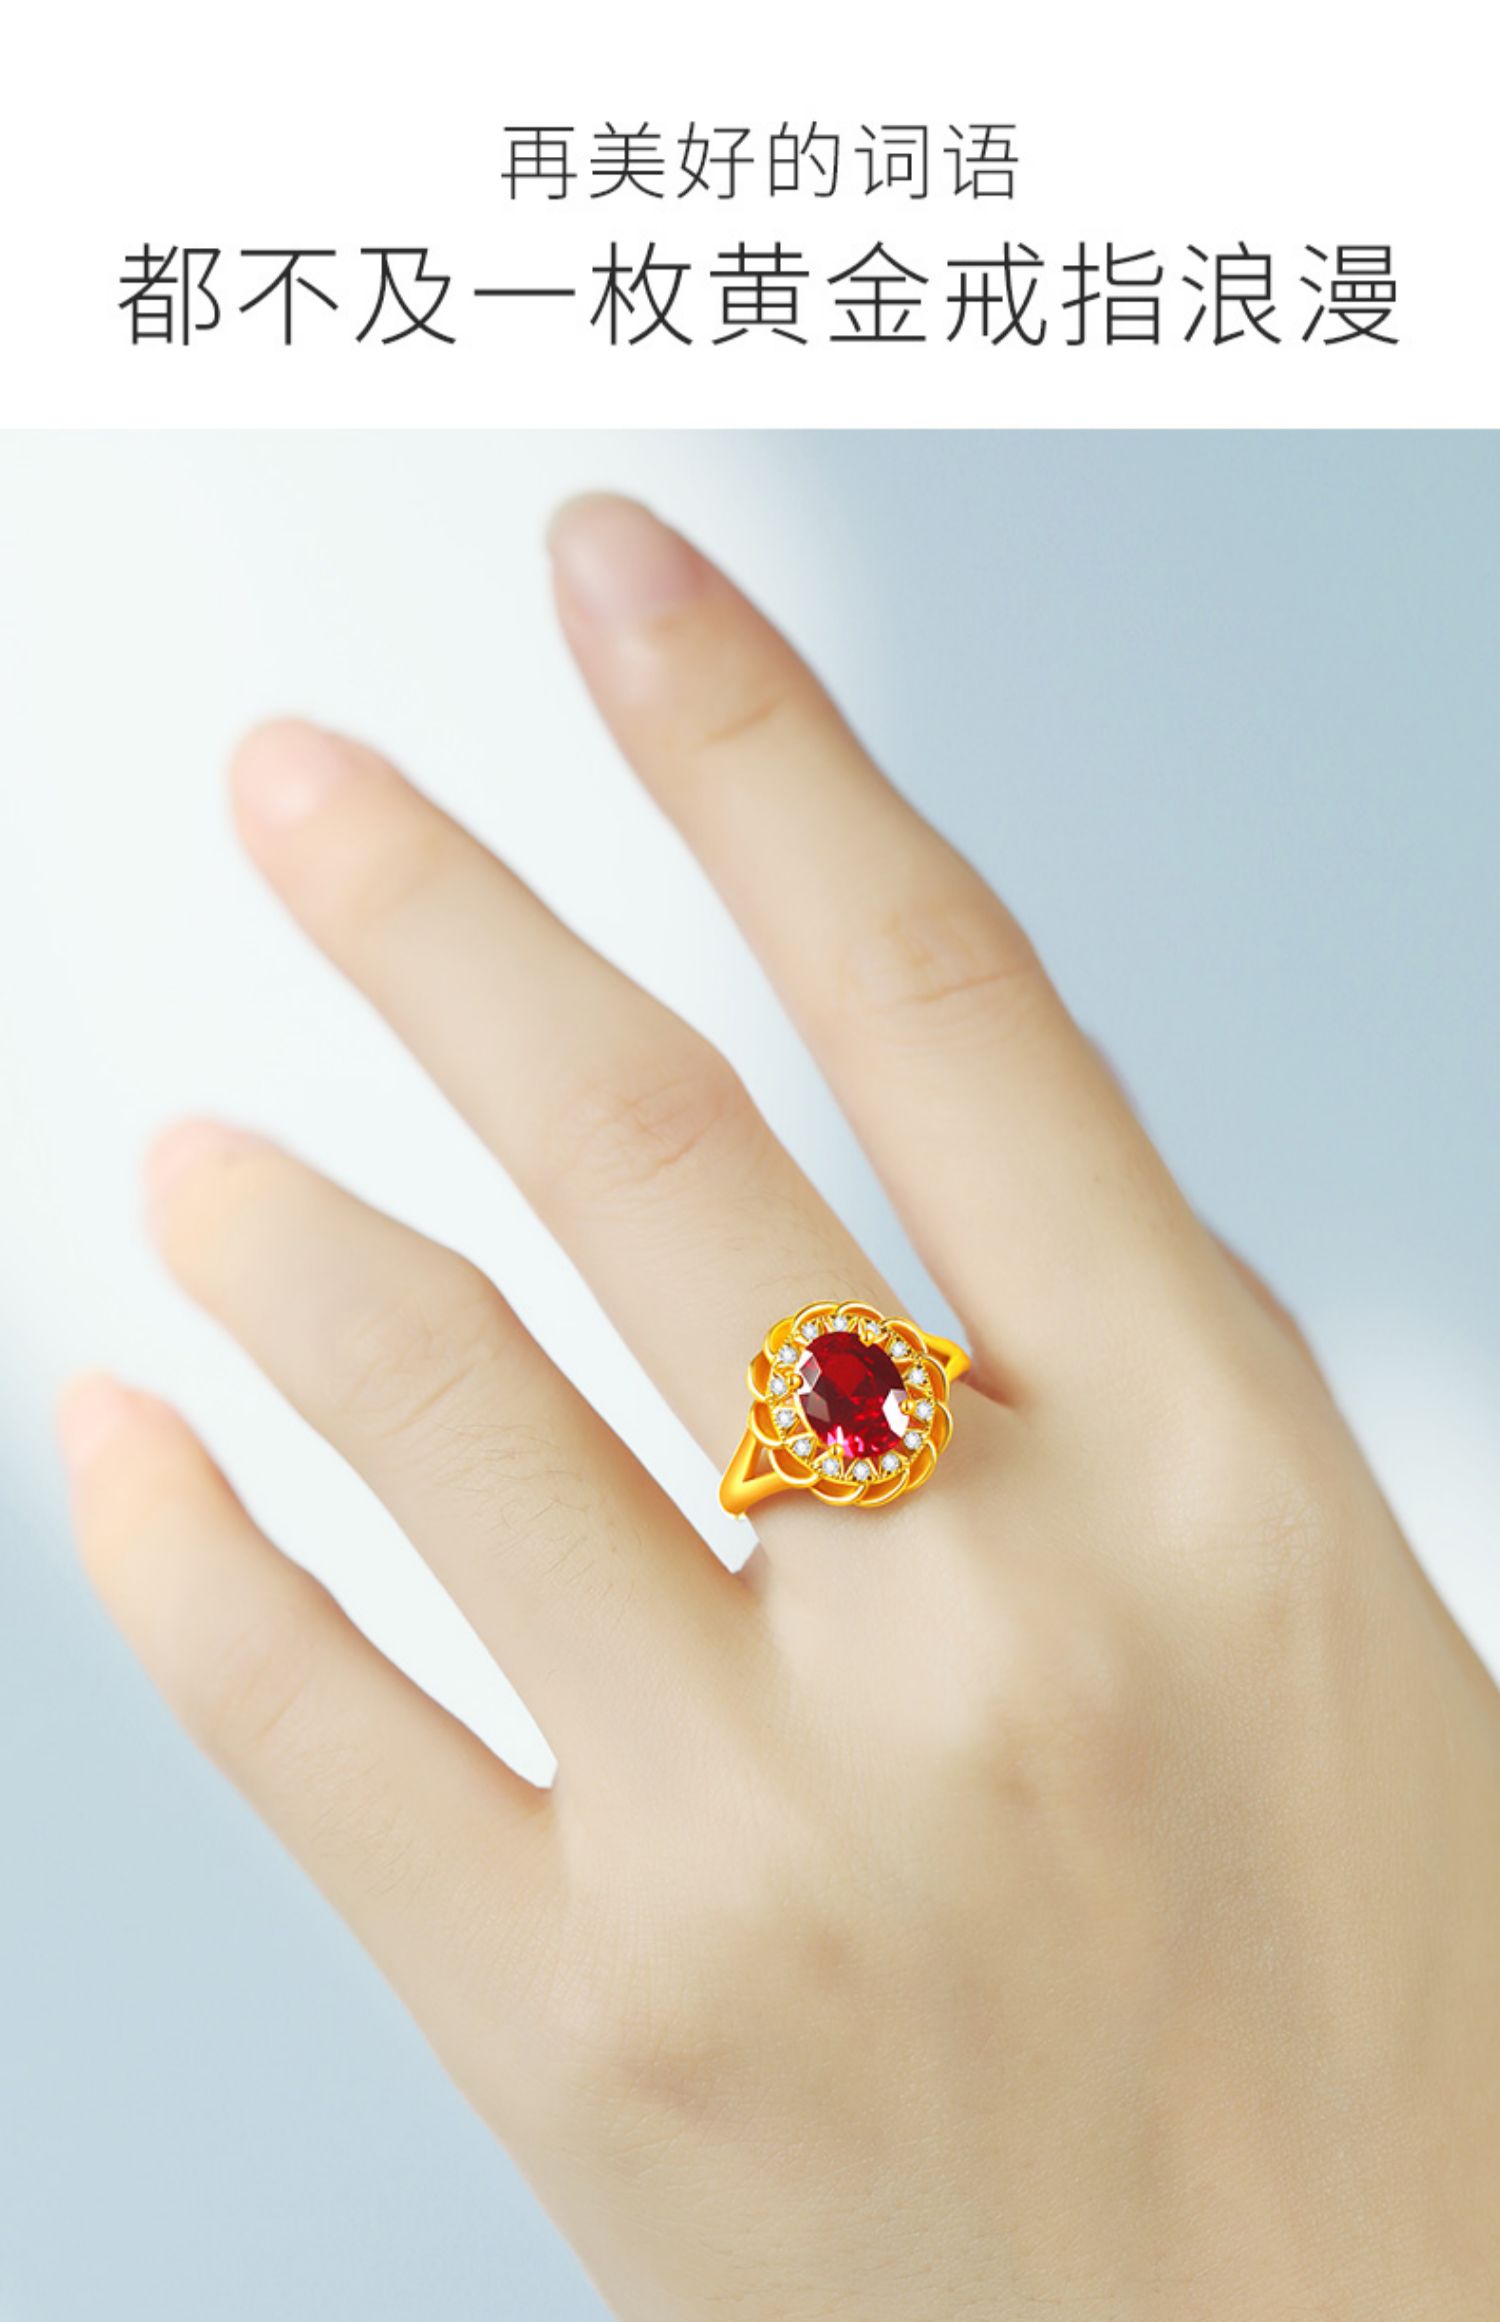 老凤祥的红宝石戒指图片及价格查询的简单介绍